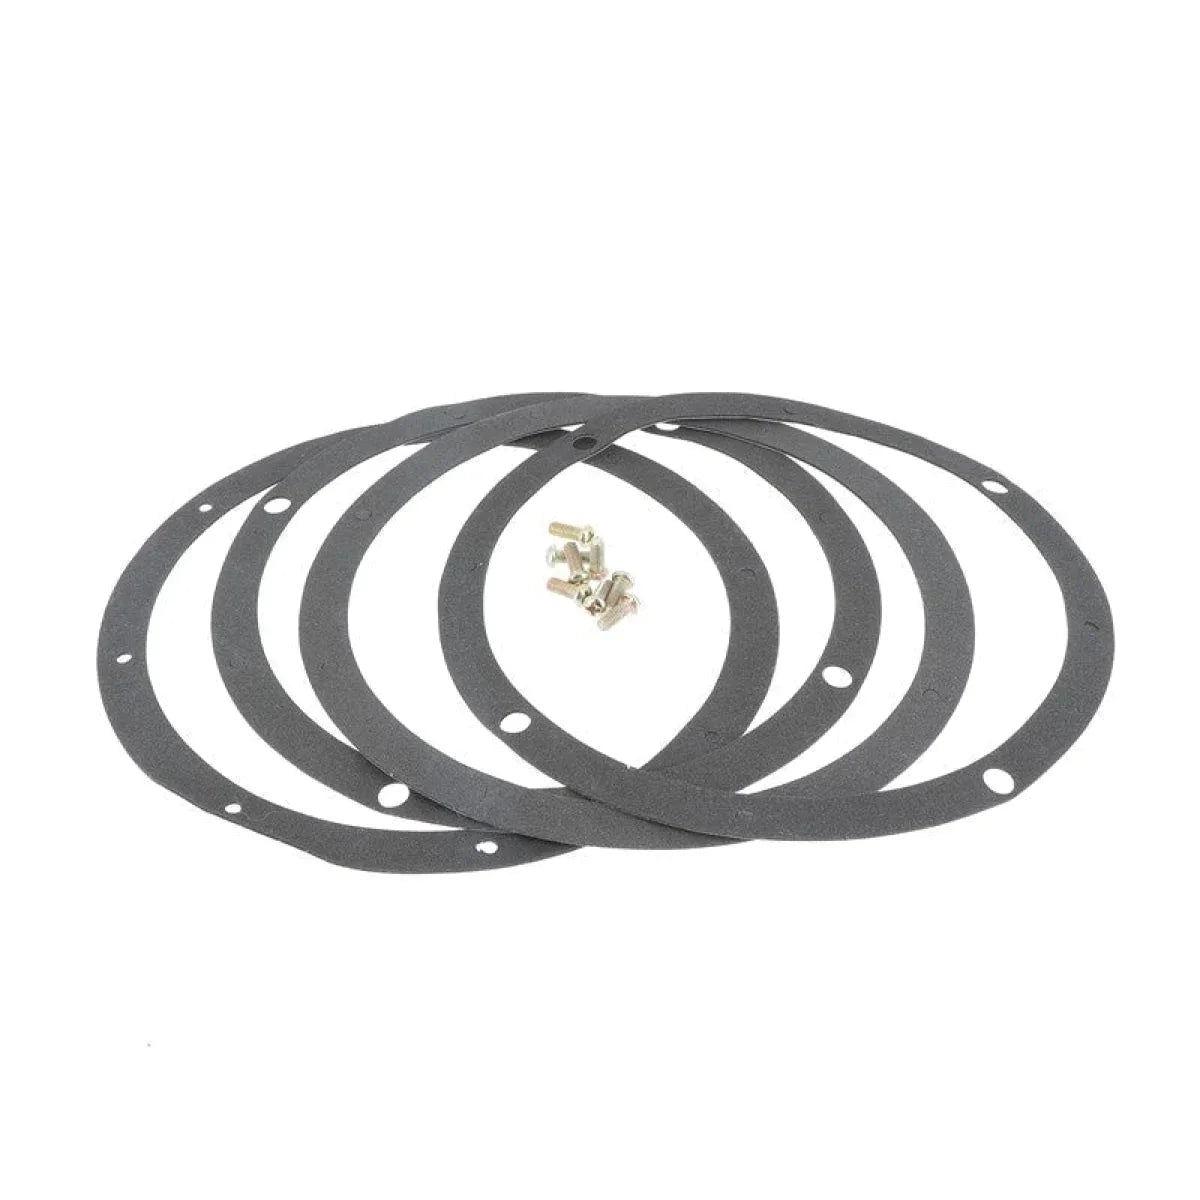 Masori-Aluring 165-17 Universel pour anneaux de haut-parleurs 6.5" (16,5cm)-Masori.fr